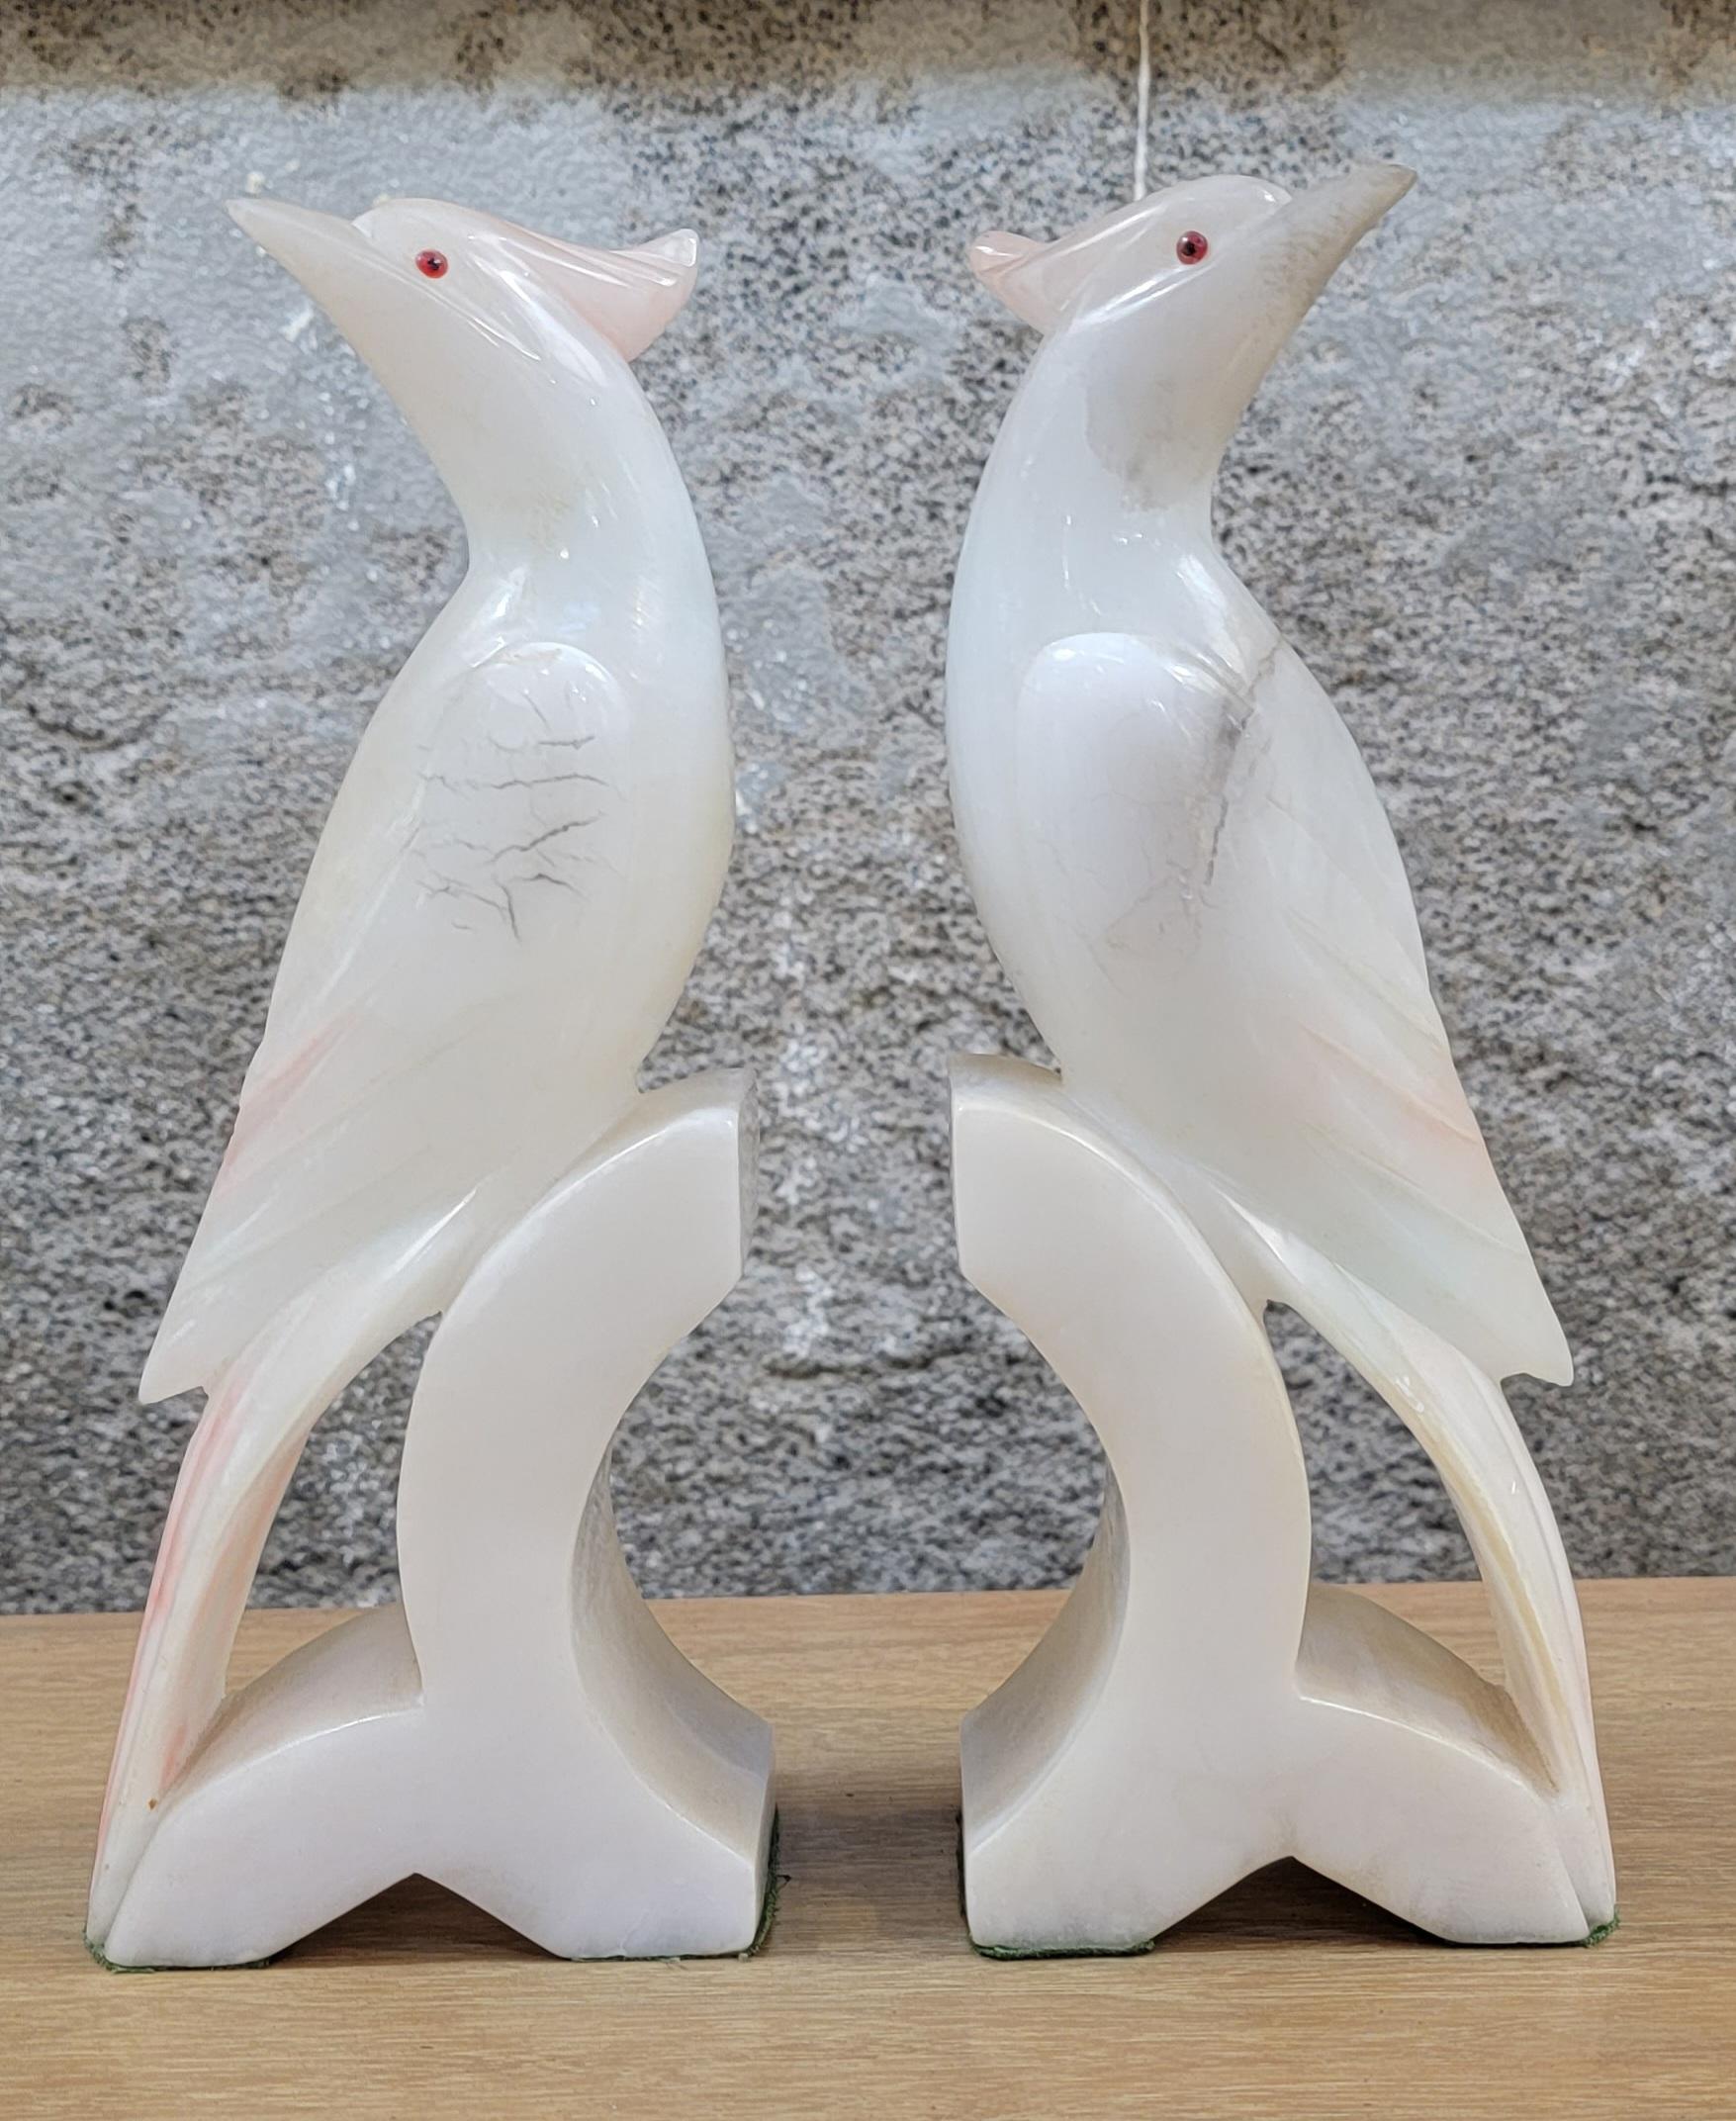 Paire de serre-livres en albâtre sculpté en forme de Cockatoo. Albâtre marbré blanc, noir et rose. Chaque serre-livre mesure 9,5 pouces de haut, 3,75 pouces de large et 2,25 pouces de profondeur.